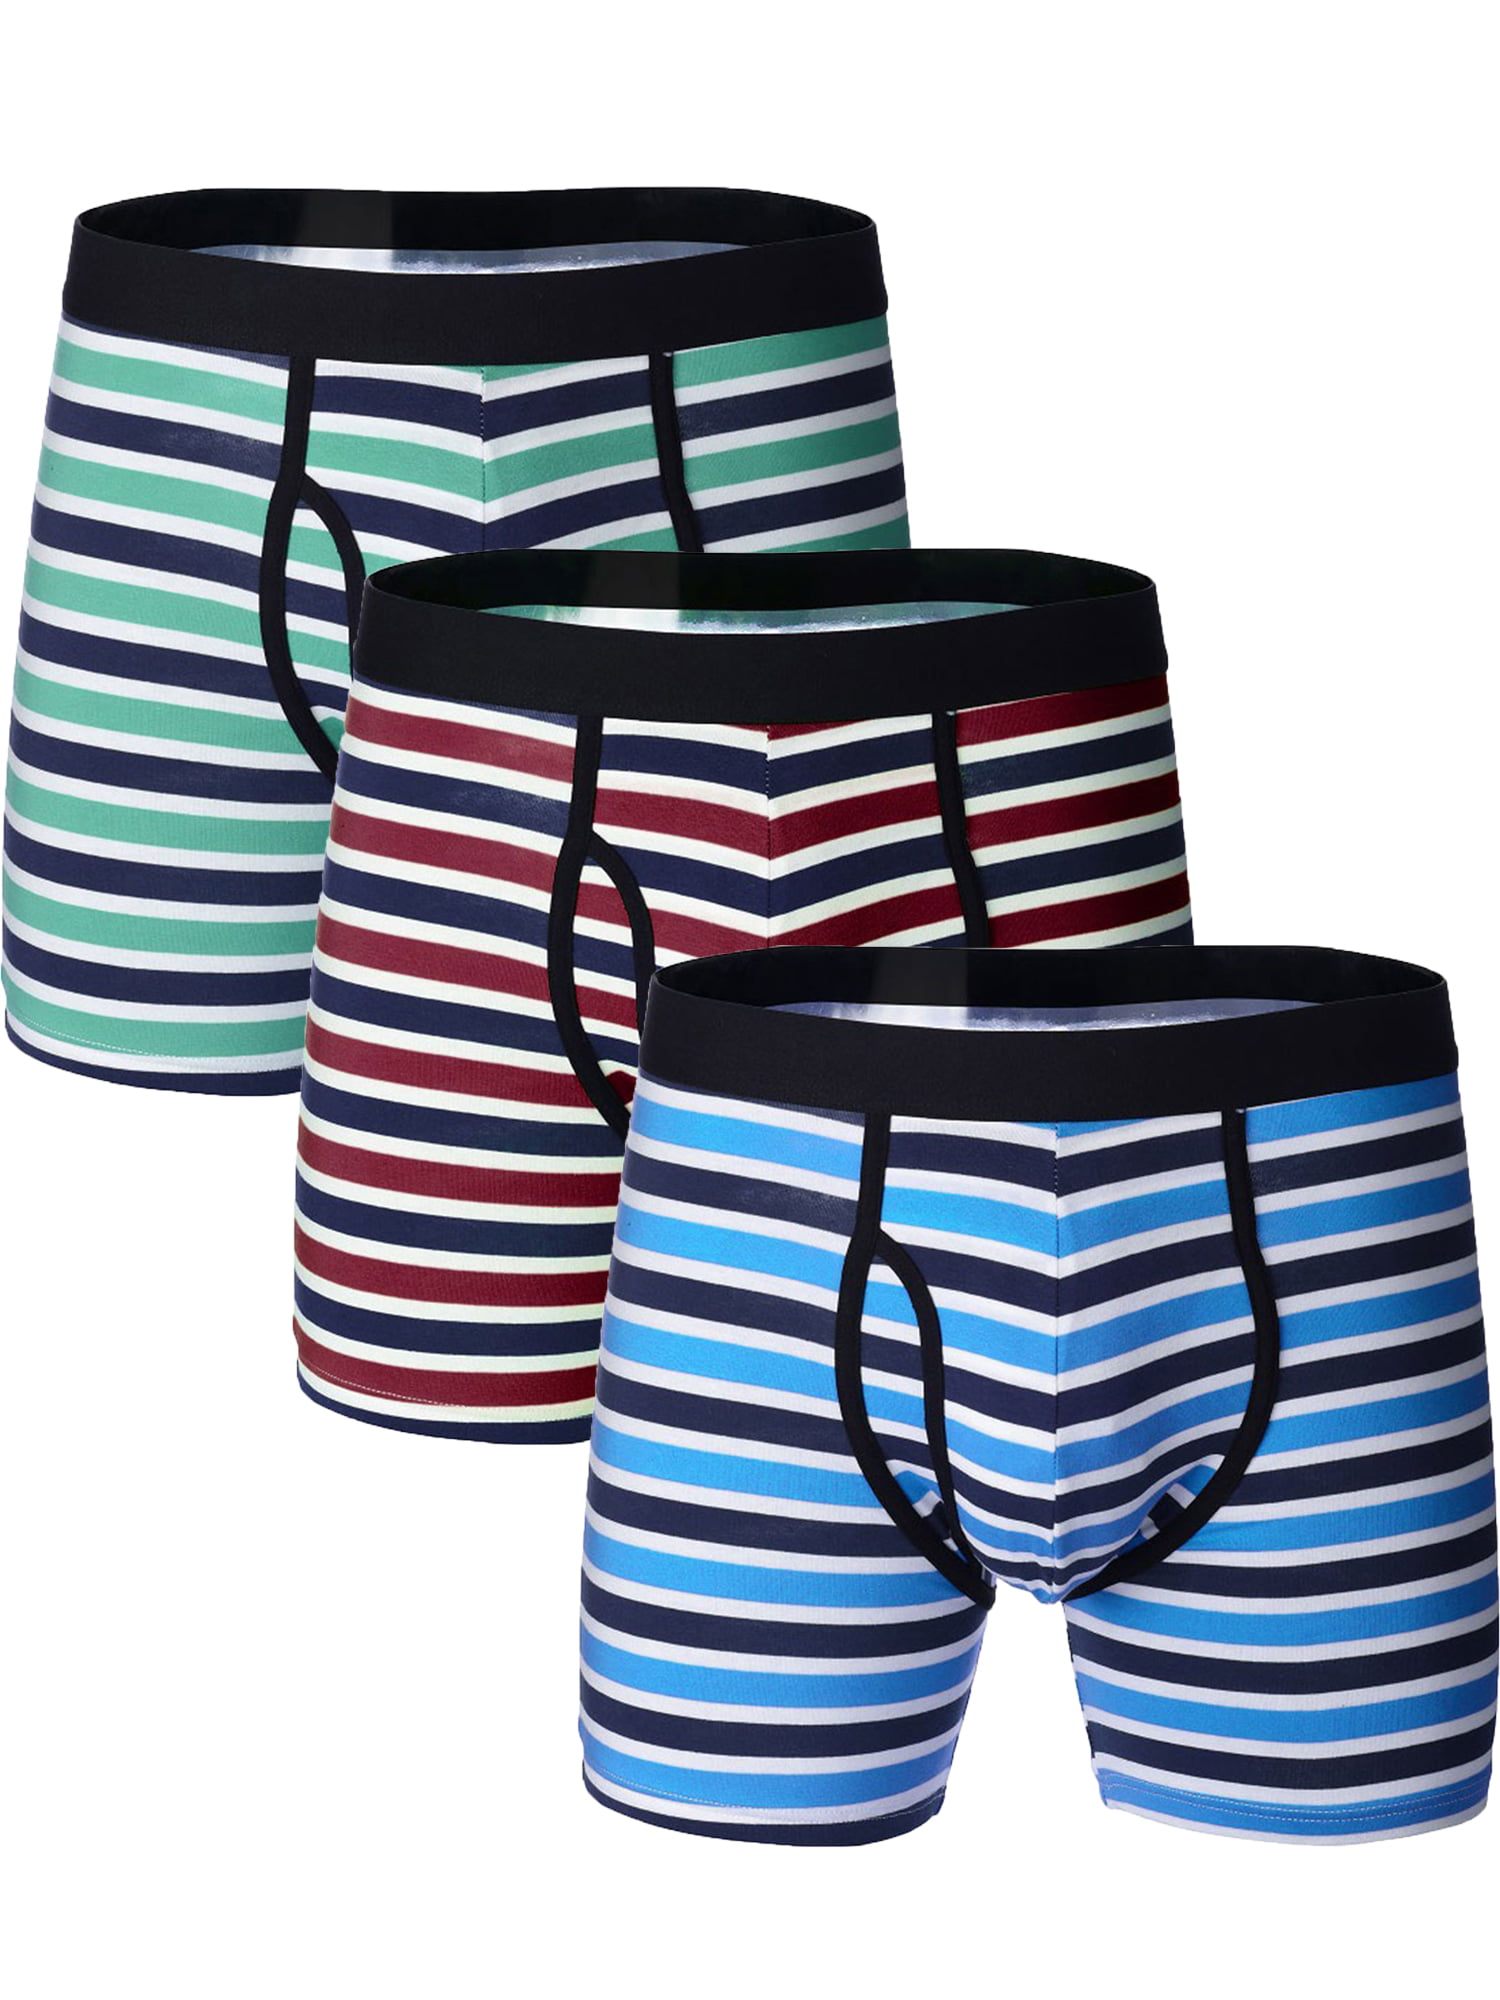 Pack of 3 Men New Stripe Boxer Shorts Pants Briefs Underwear 95% Cotton Boxers S M L XL 2XL